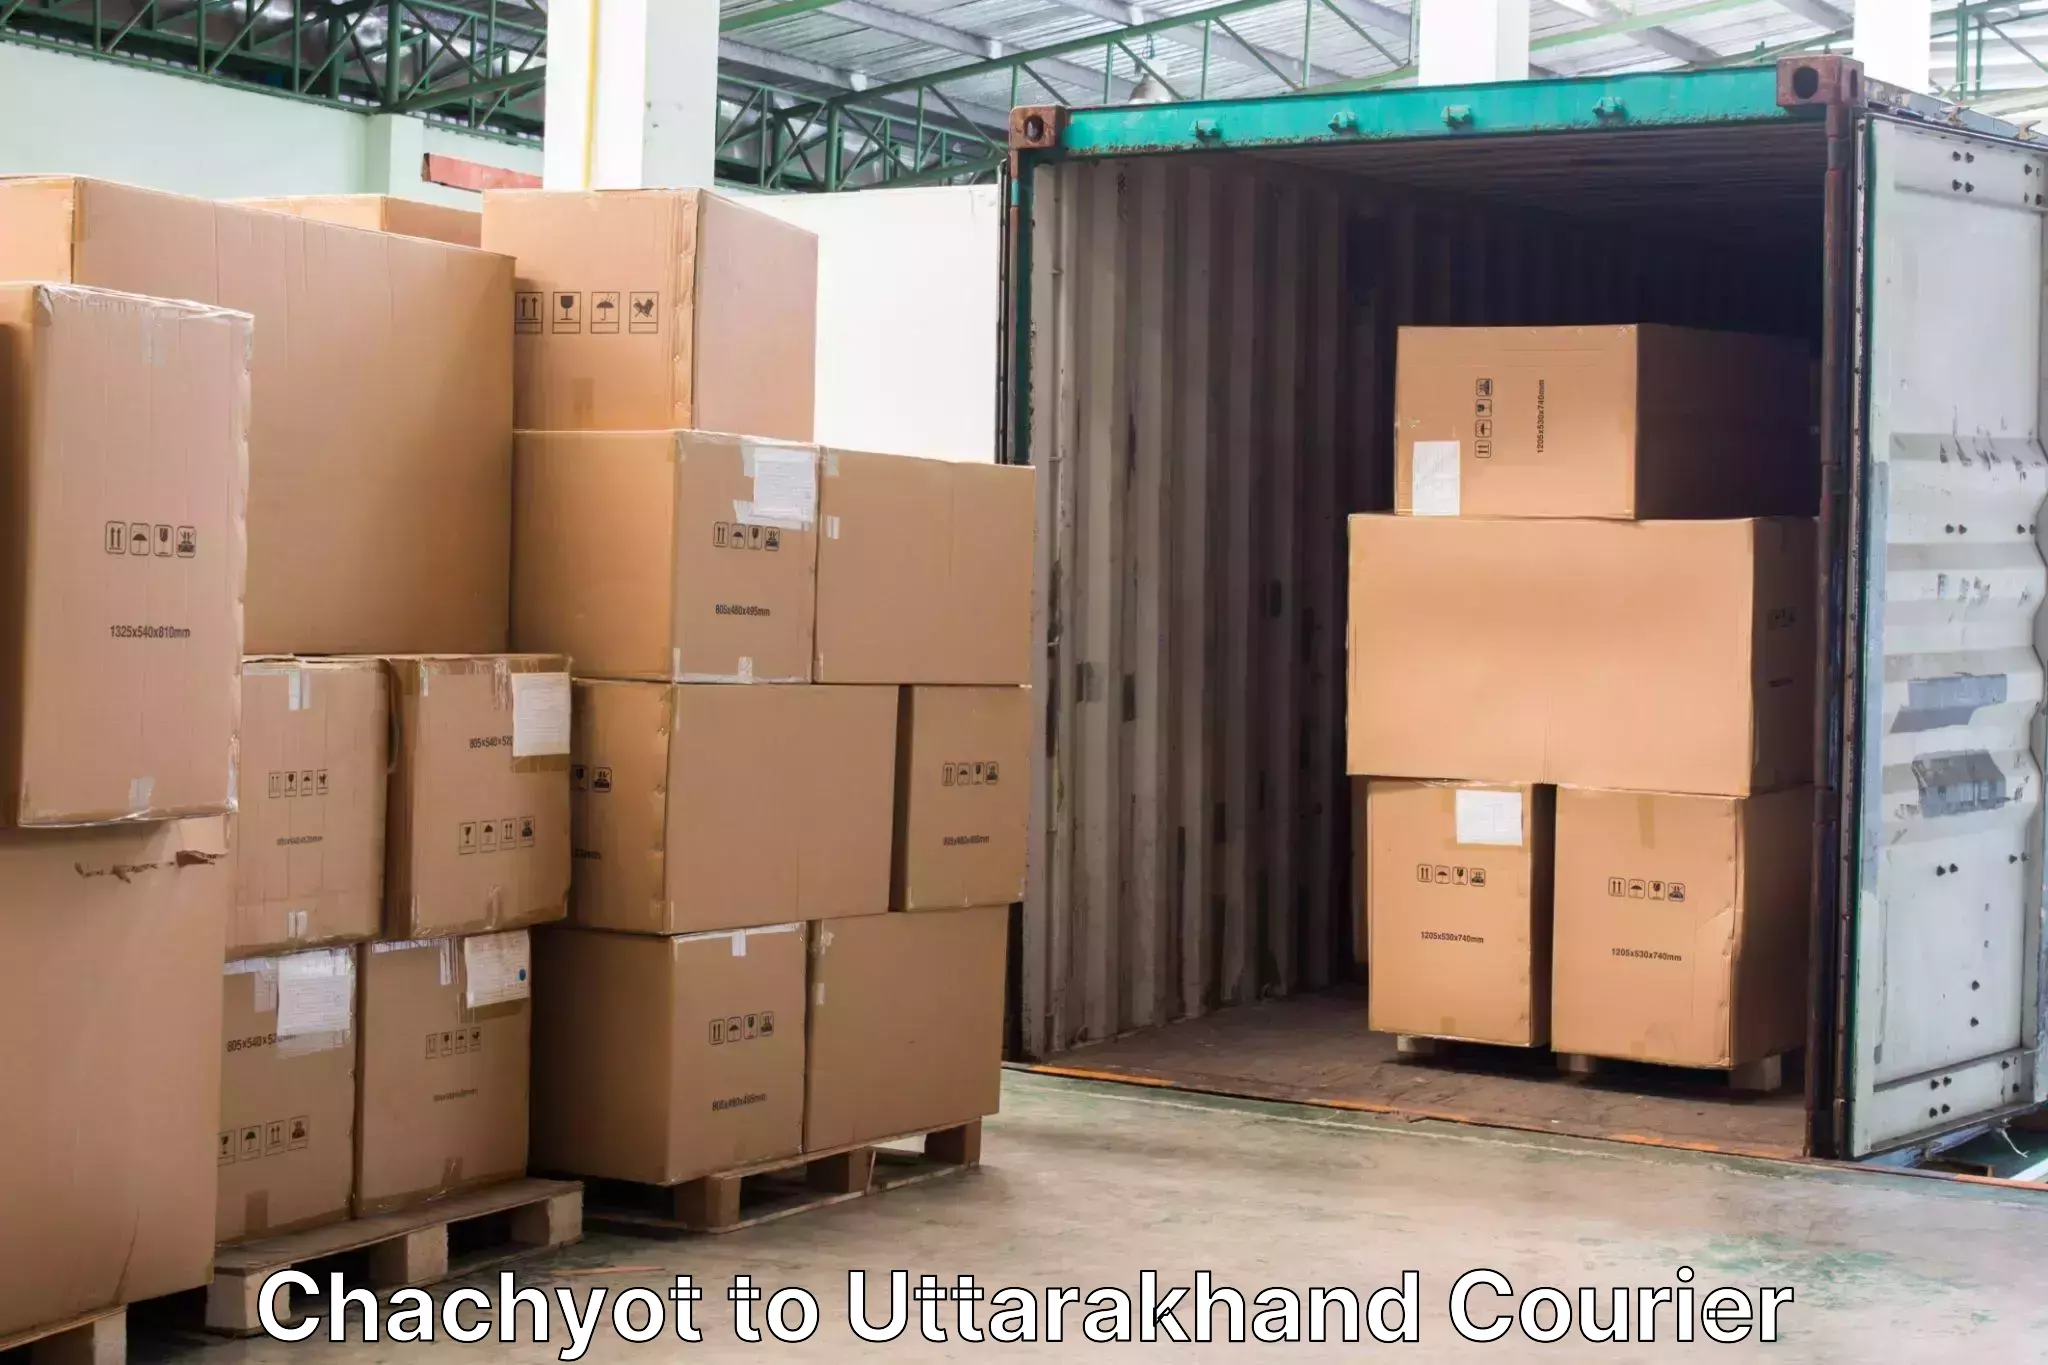 Regional luggage transport Chachyot to Uttarakhand